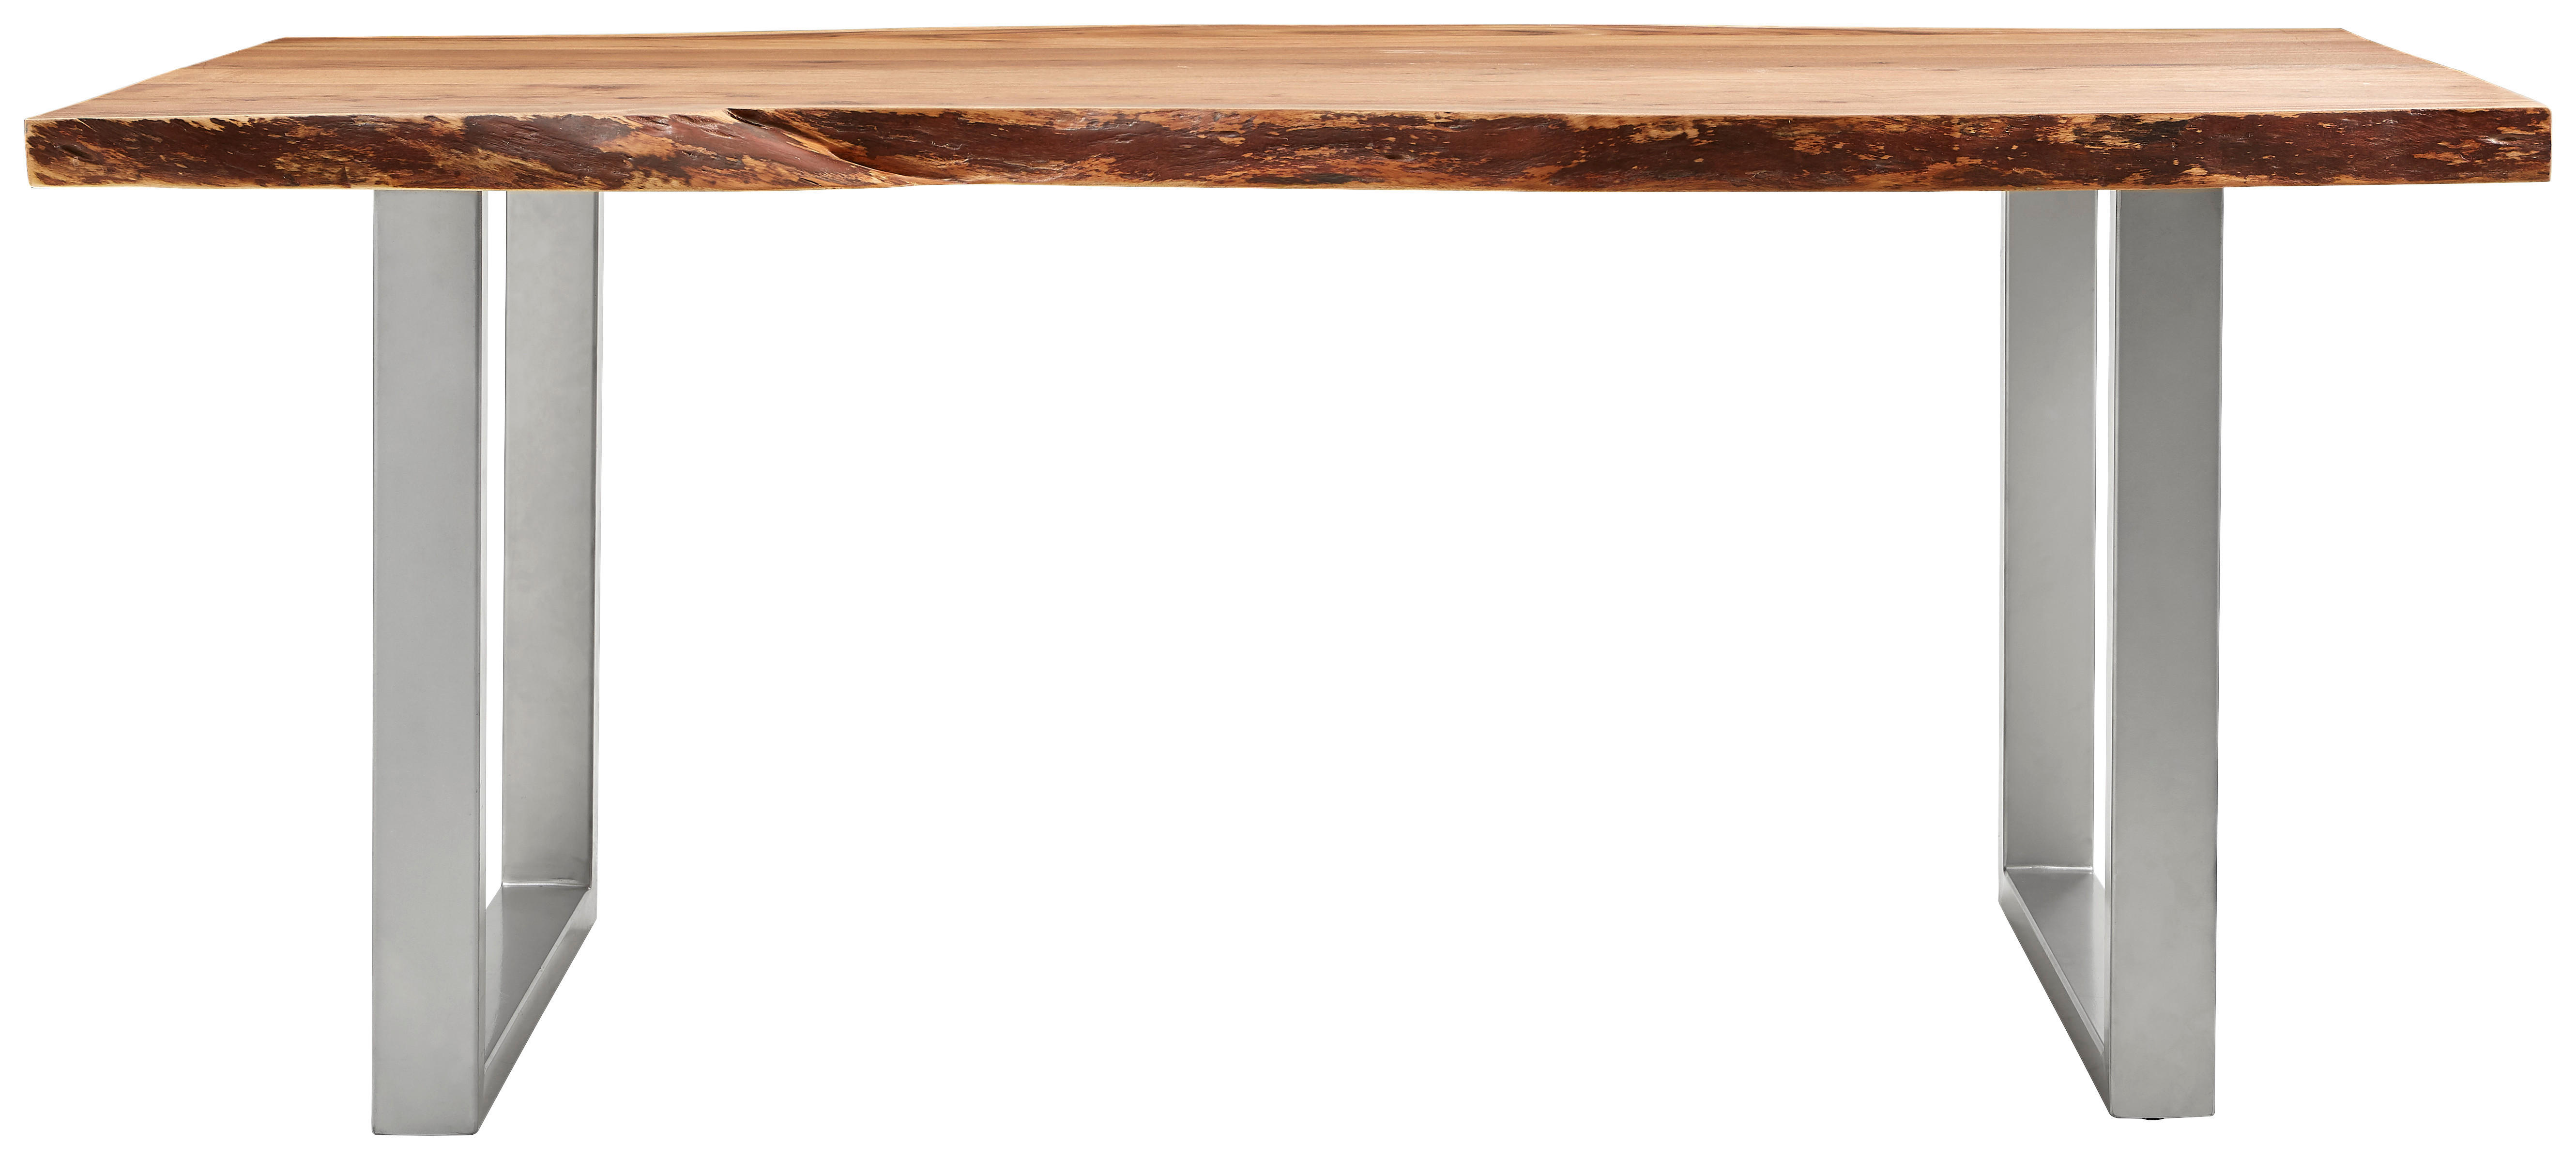 ESSTISCH 180/90/76 cm Akazie massiv Holz Akaziefarben rechteckig  - Alufarben/Akaziefarben, LIFESTYLE, Holz/Metall (180/90/76cm) - Carryhome